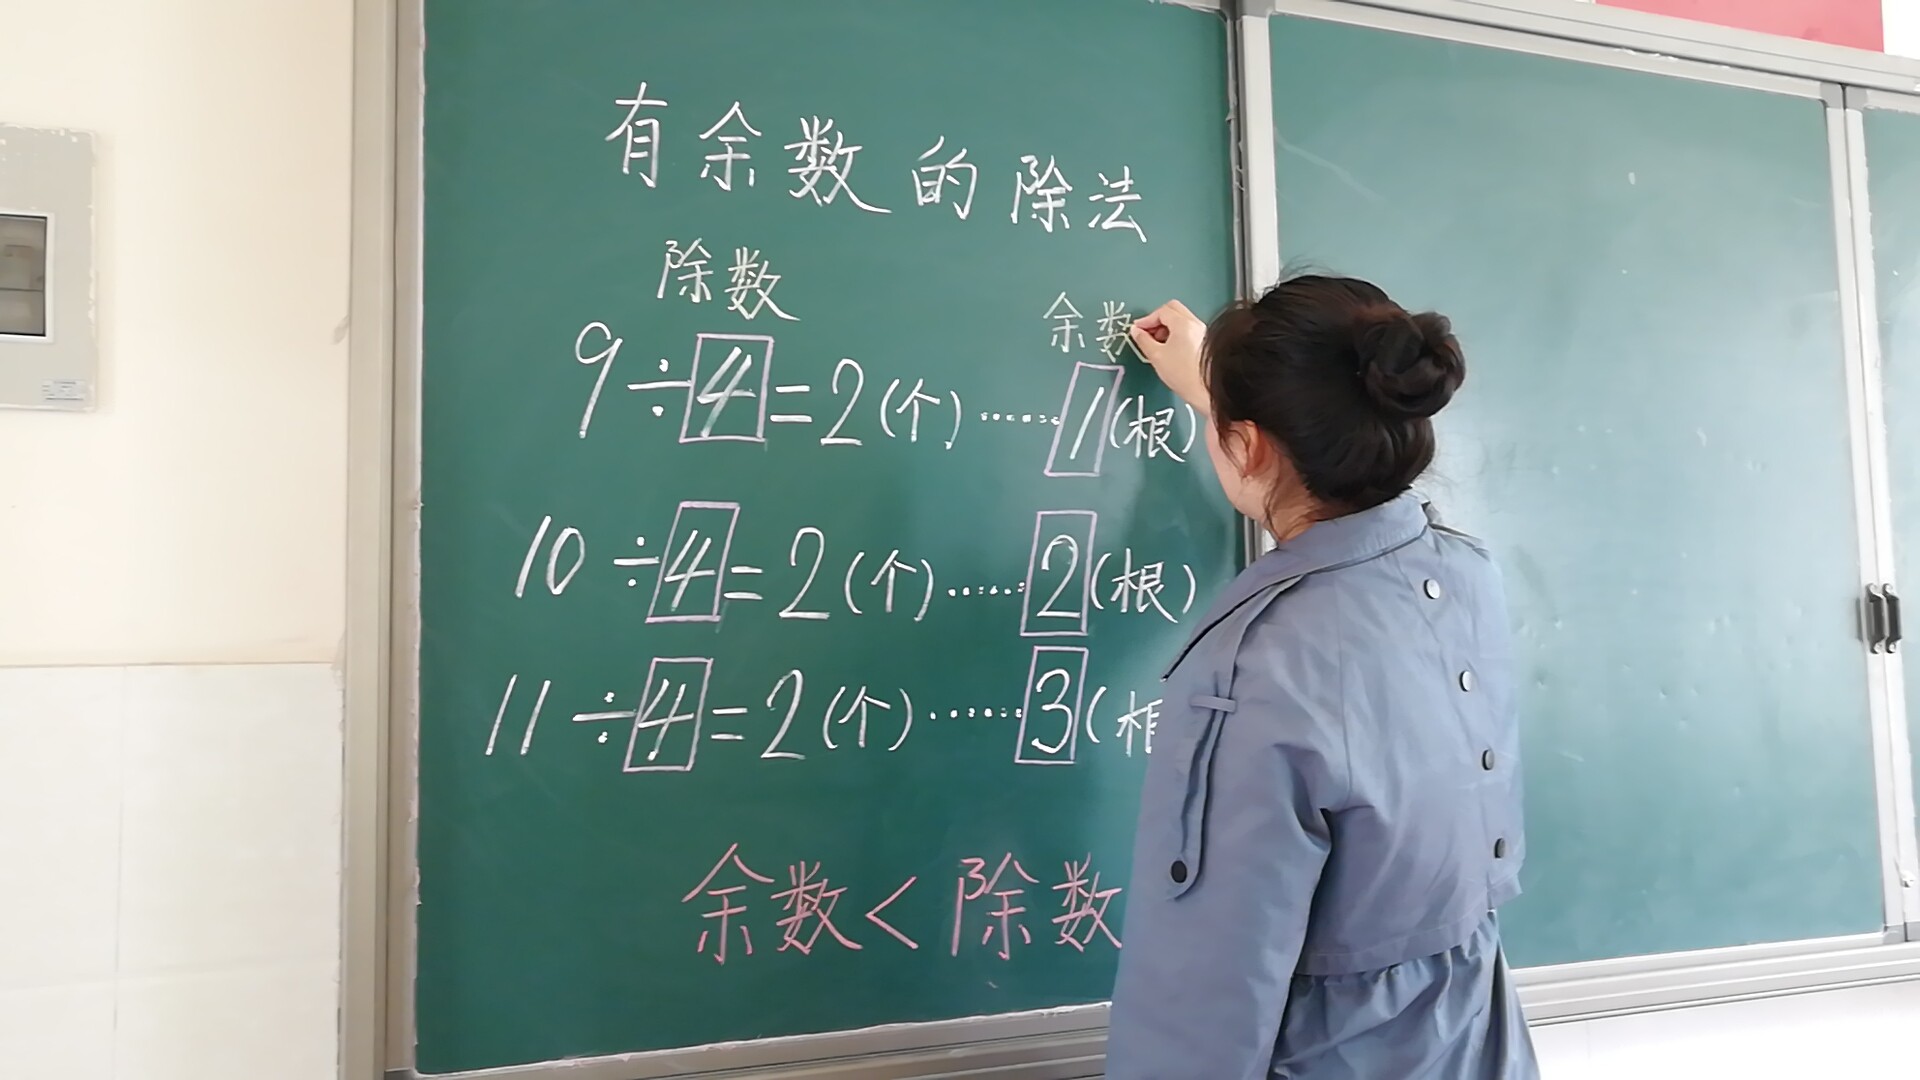 大河网讯 5月5日下午,郑州经开区瑞锦小学低年级数学组举行教师板书